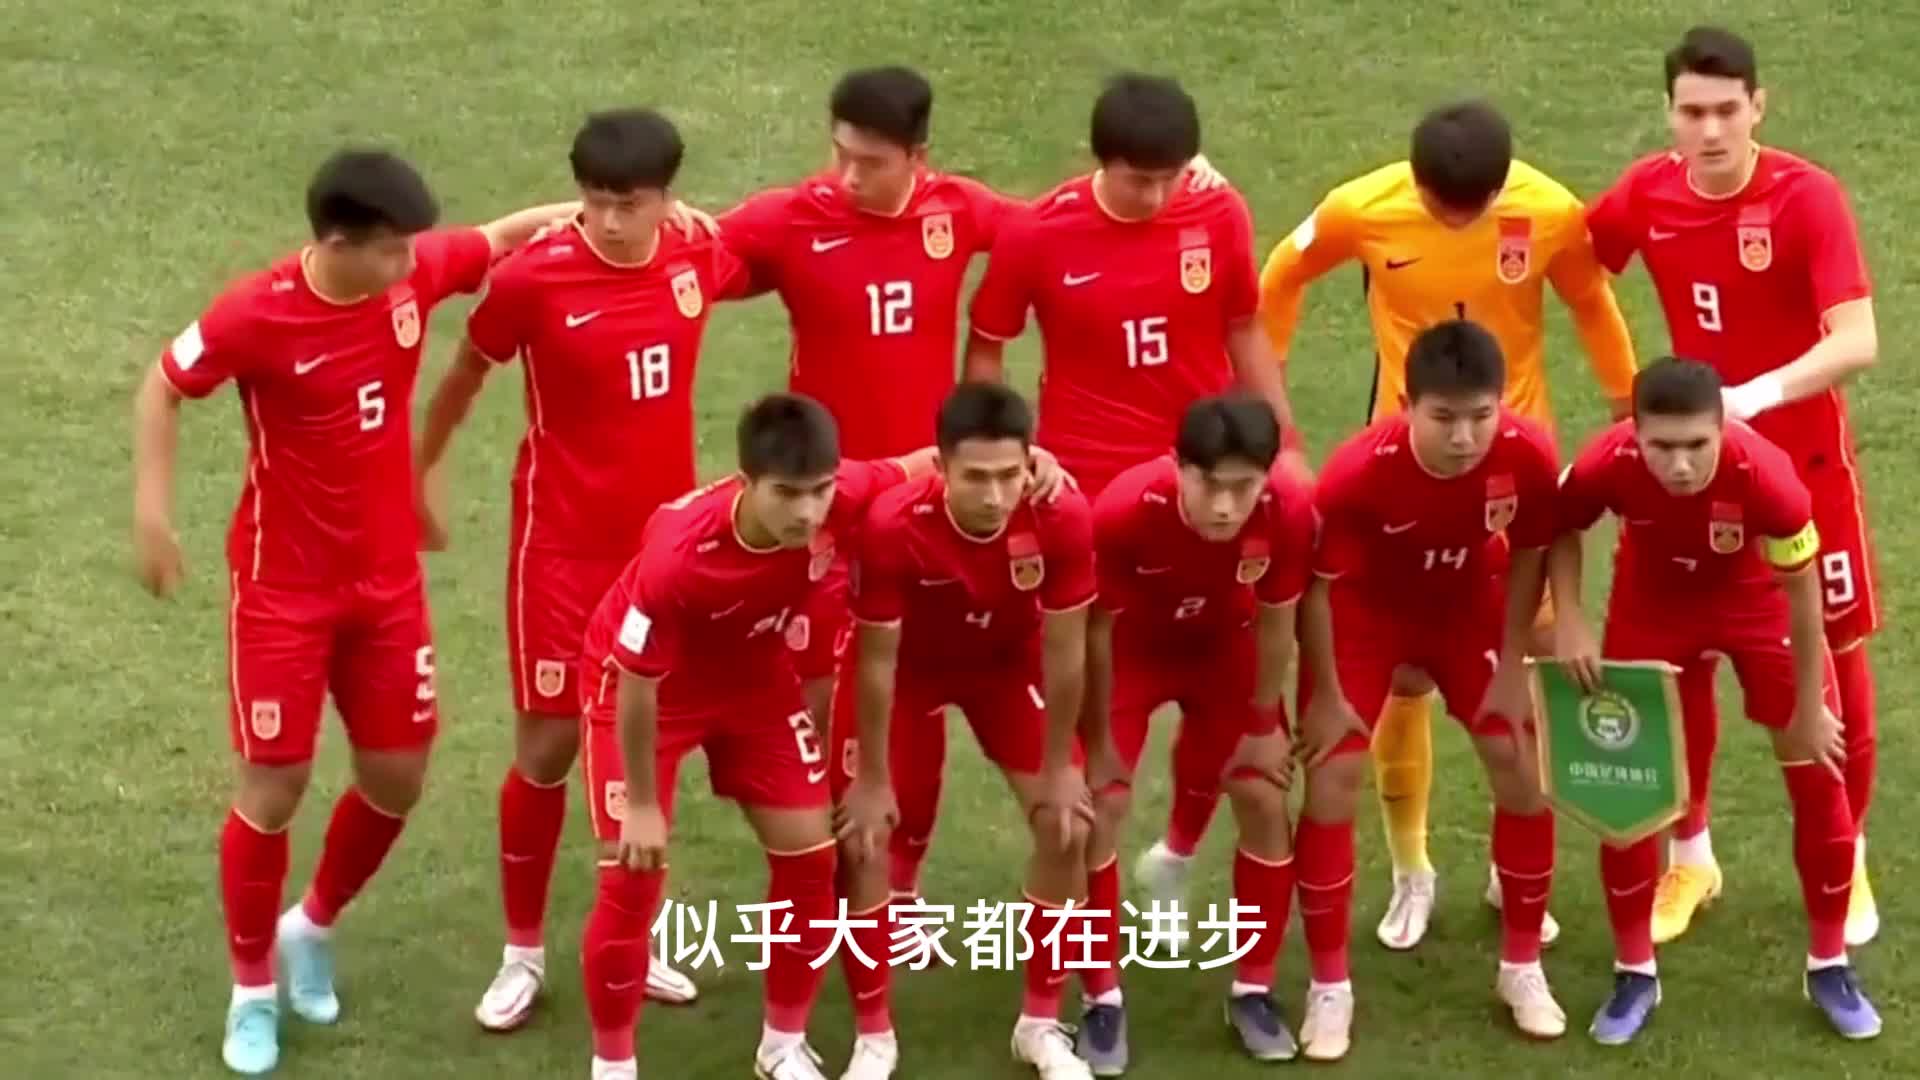 泰国1-0越南，总比分3-2夺得东南亚足球锦标赛冠军_PP视频体育频道